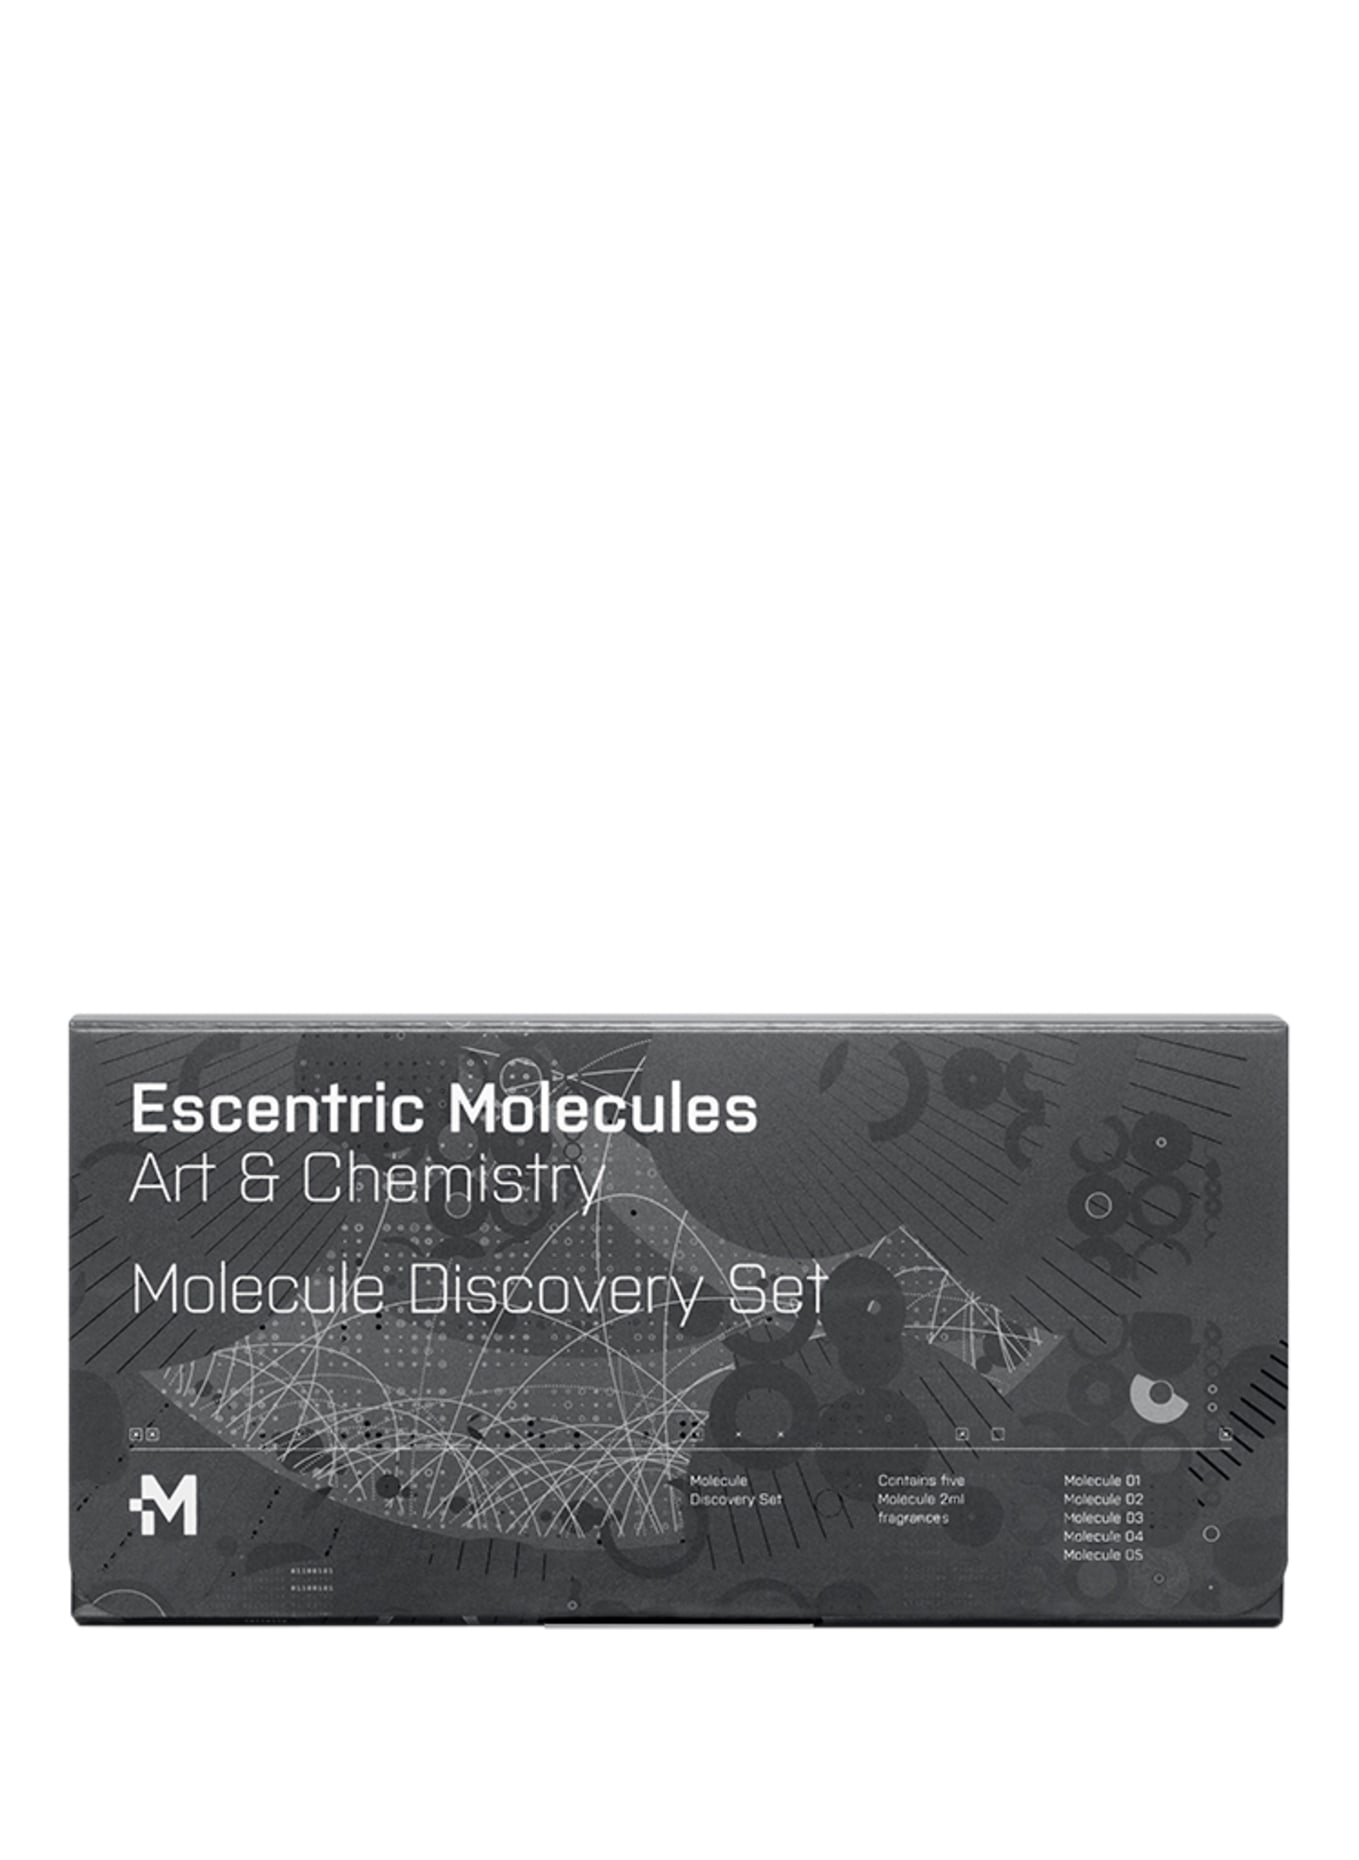 Escentric Molecules MOLECULE DISCOVERY SET (Obrázek 2)